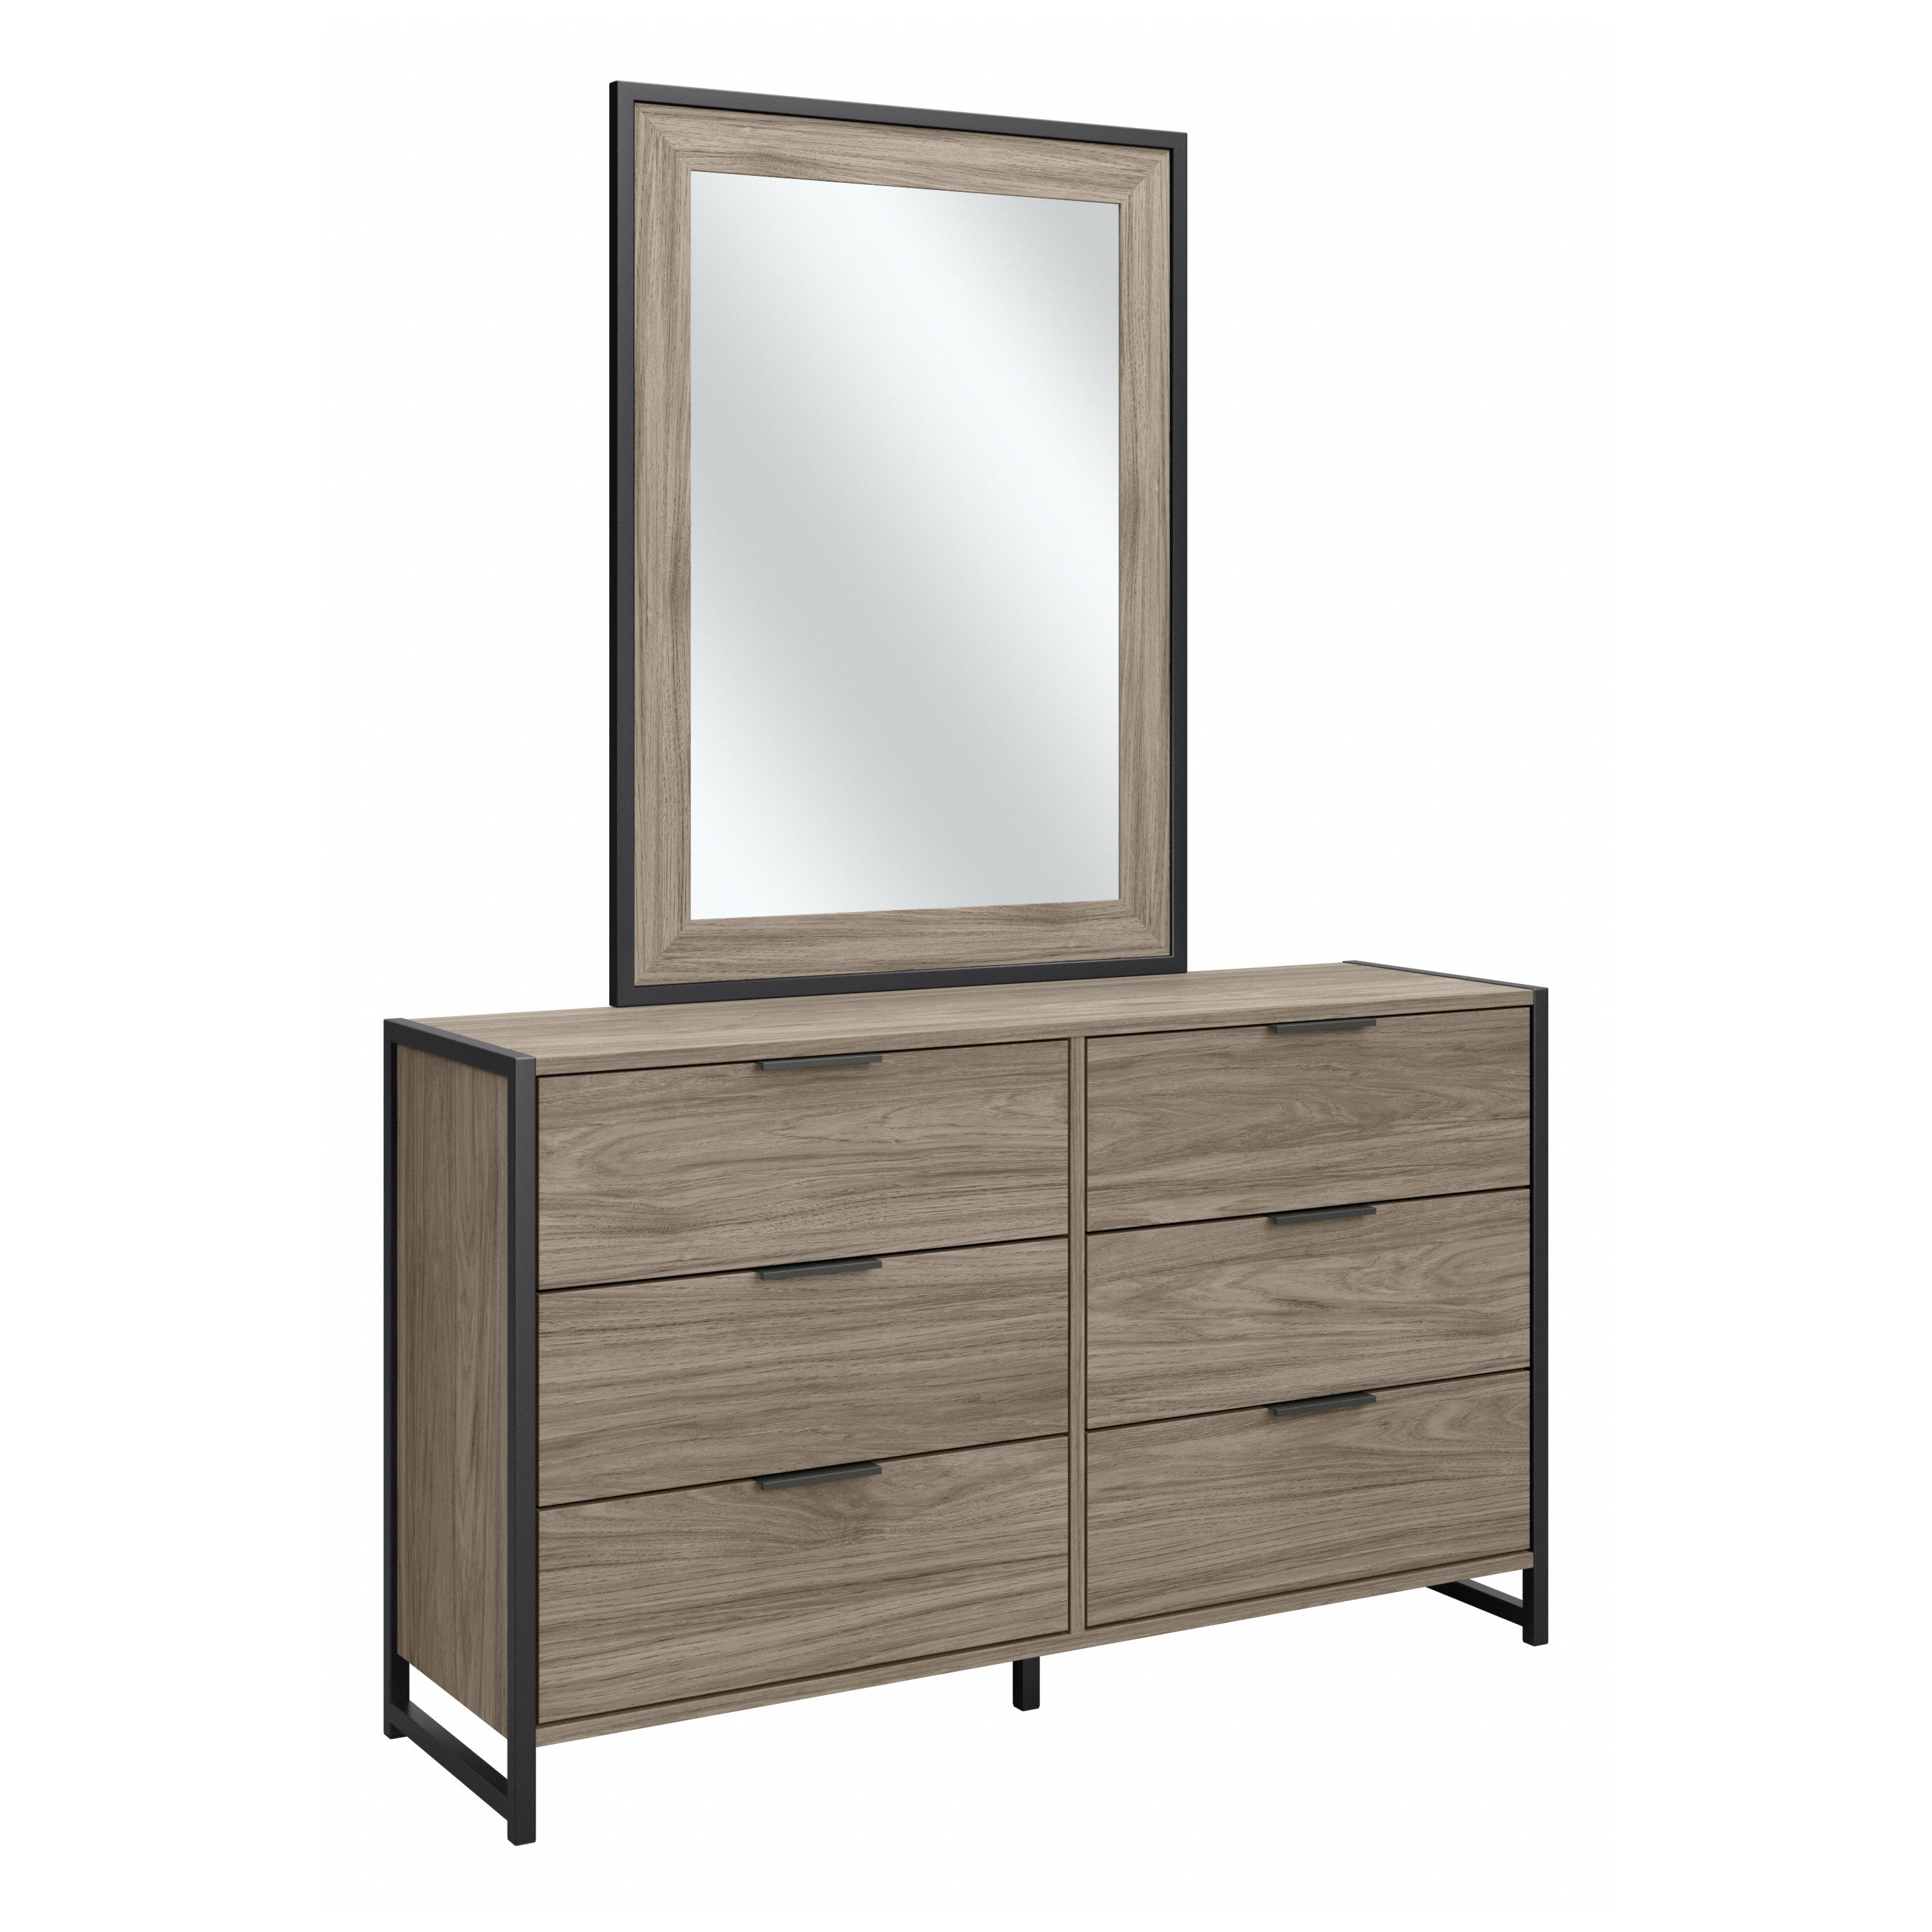 Shop Bush Furniture Atria 6 Drawer Dresser with Mirror 02 ATR015MH #color_modern hickory